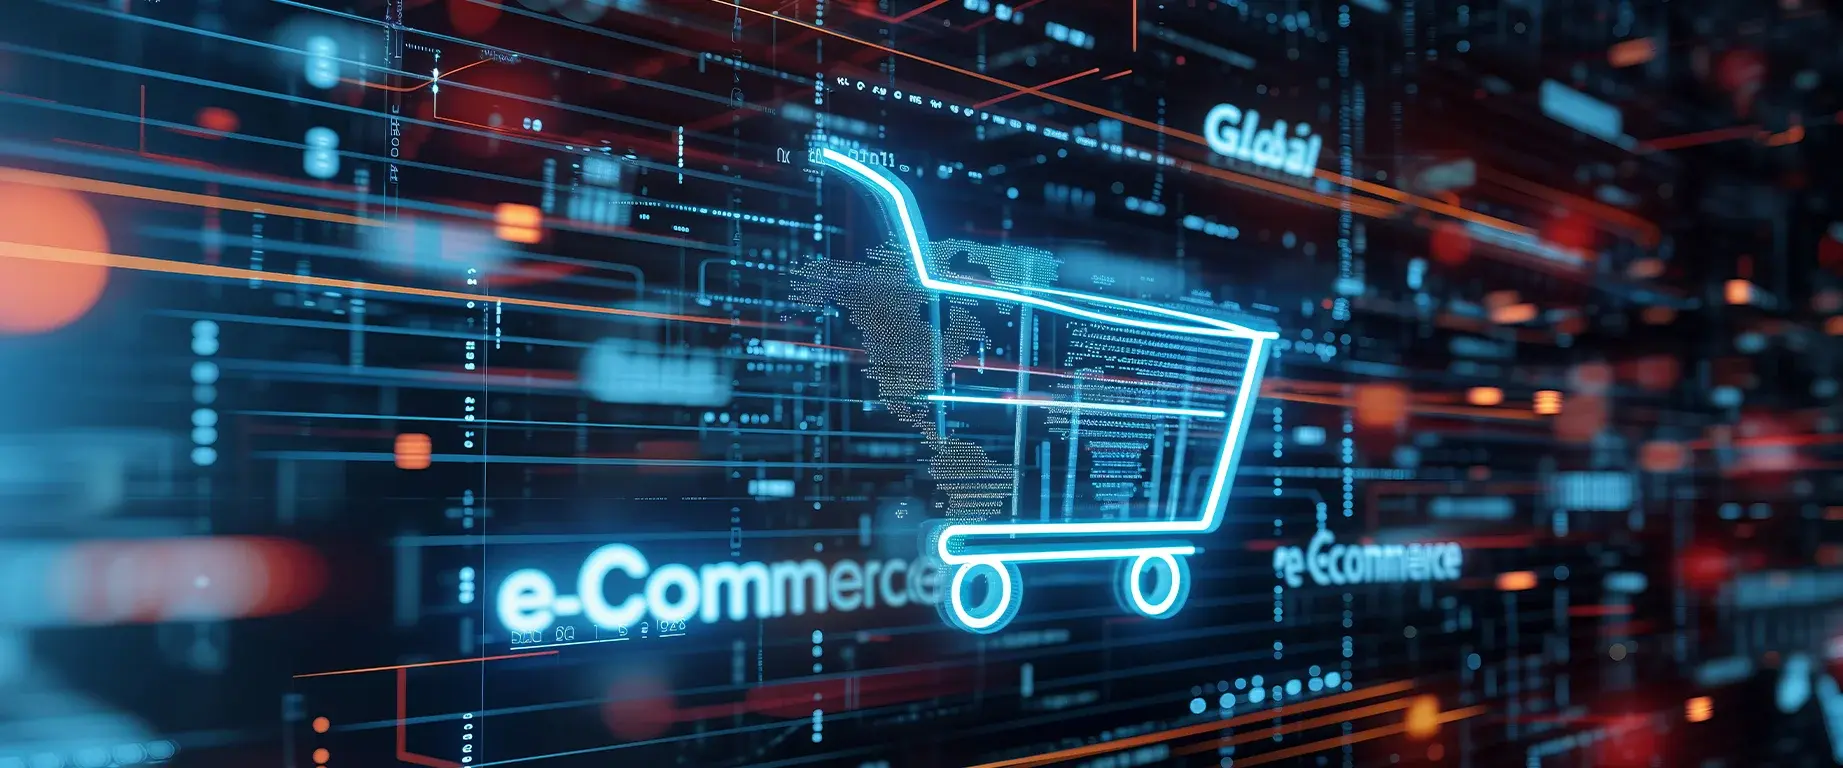 Grasfische Darstellung für den Digitalen Vertrieb mit e-Commerce Icon in Form eines Einkaufswagens